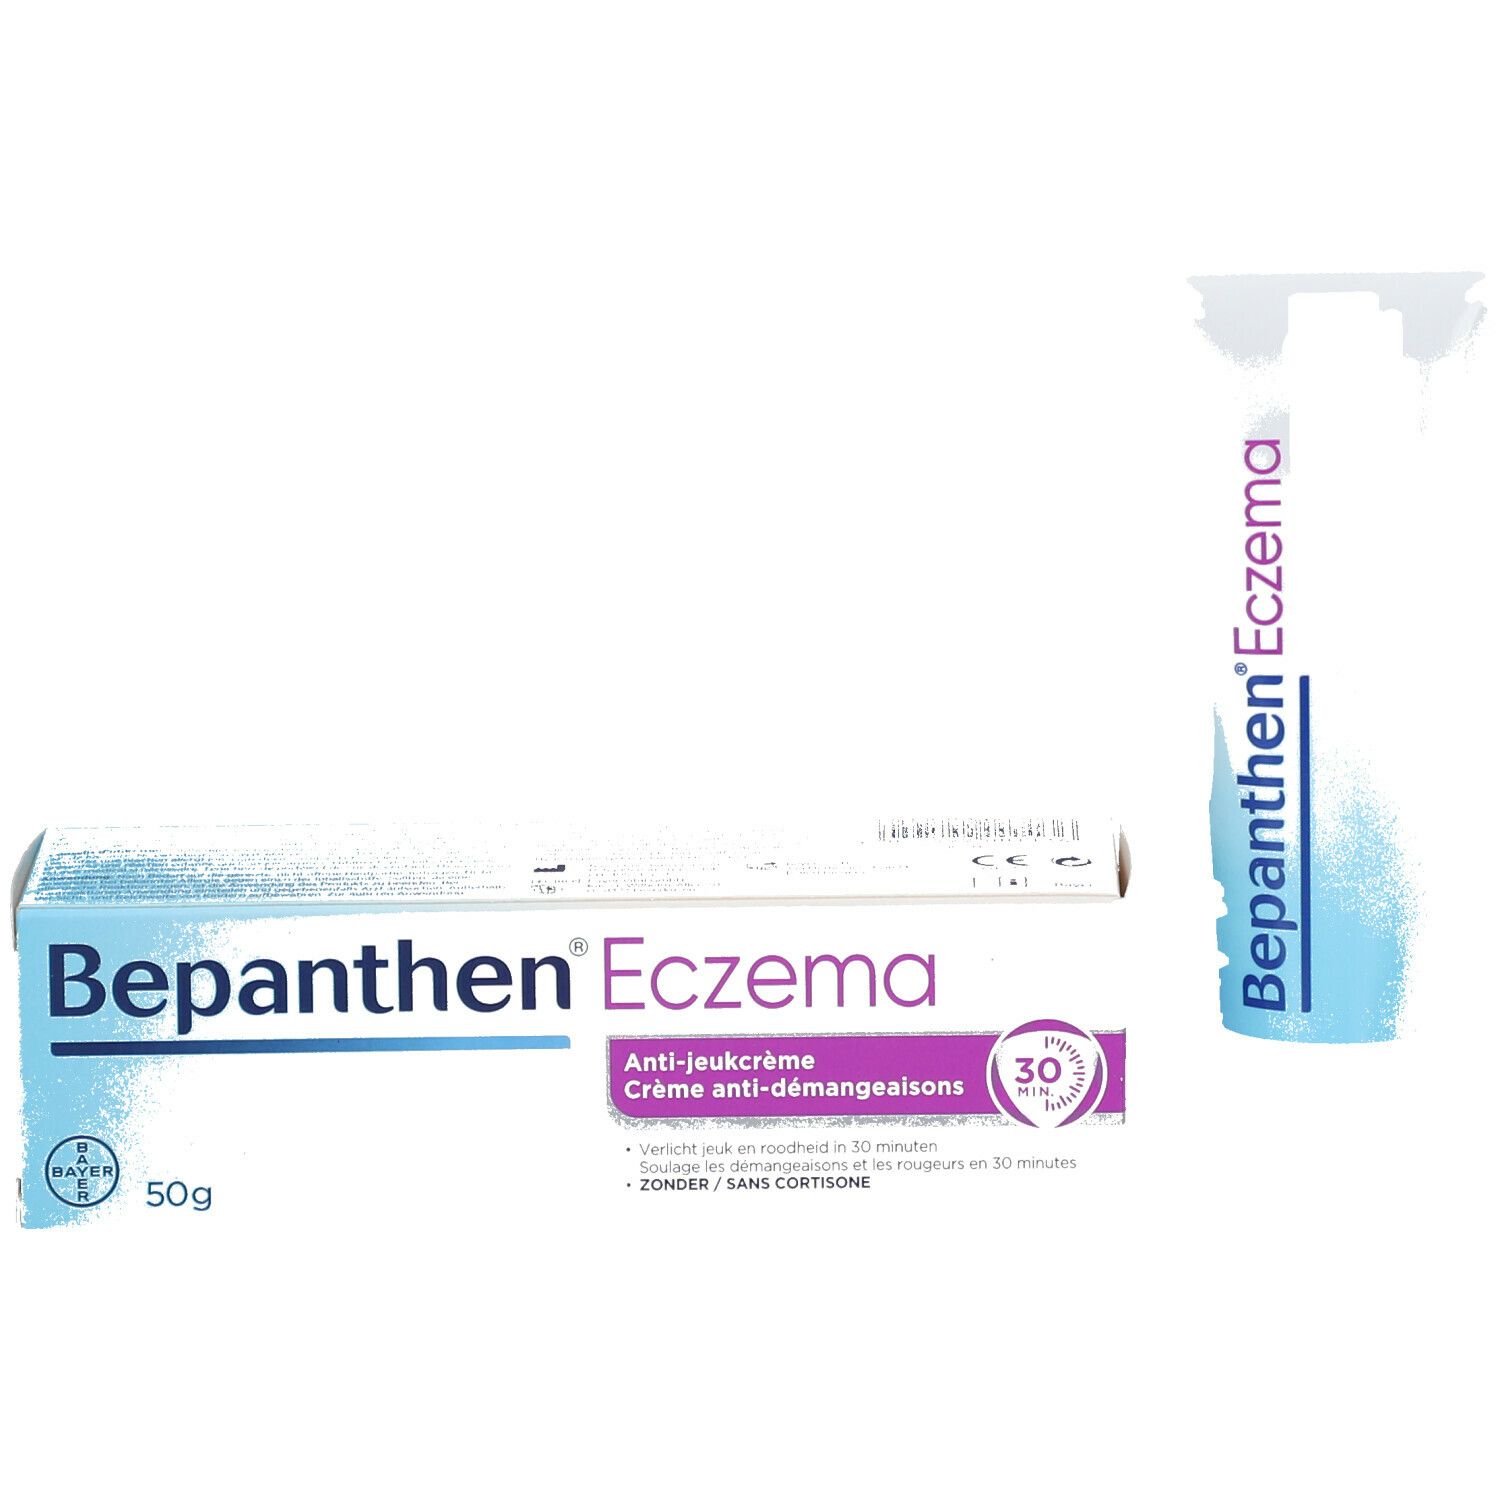 Bepanthen Sensicalm crème eczéma - Pommade Anti démangeaison